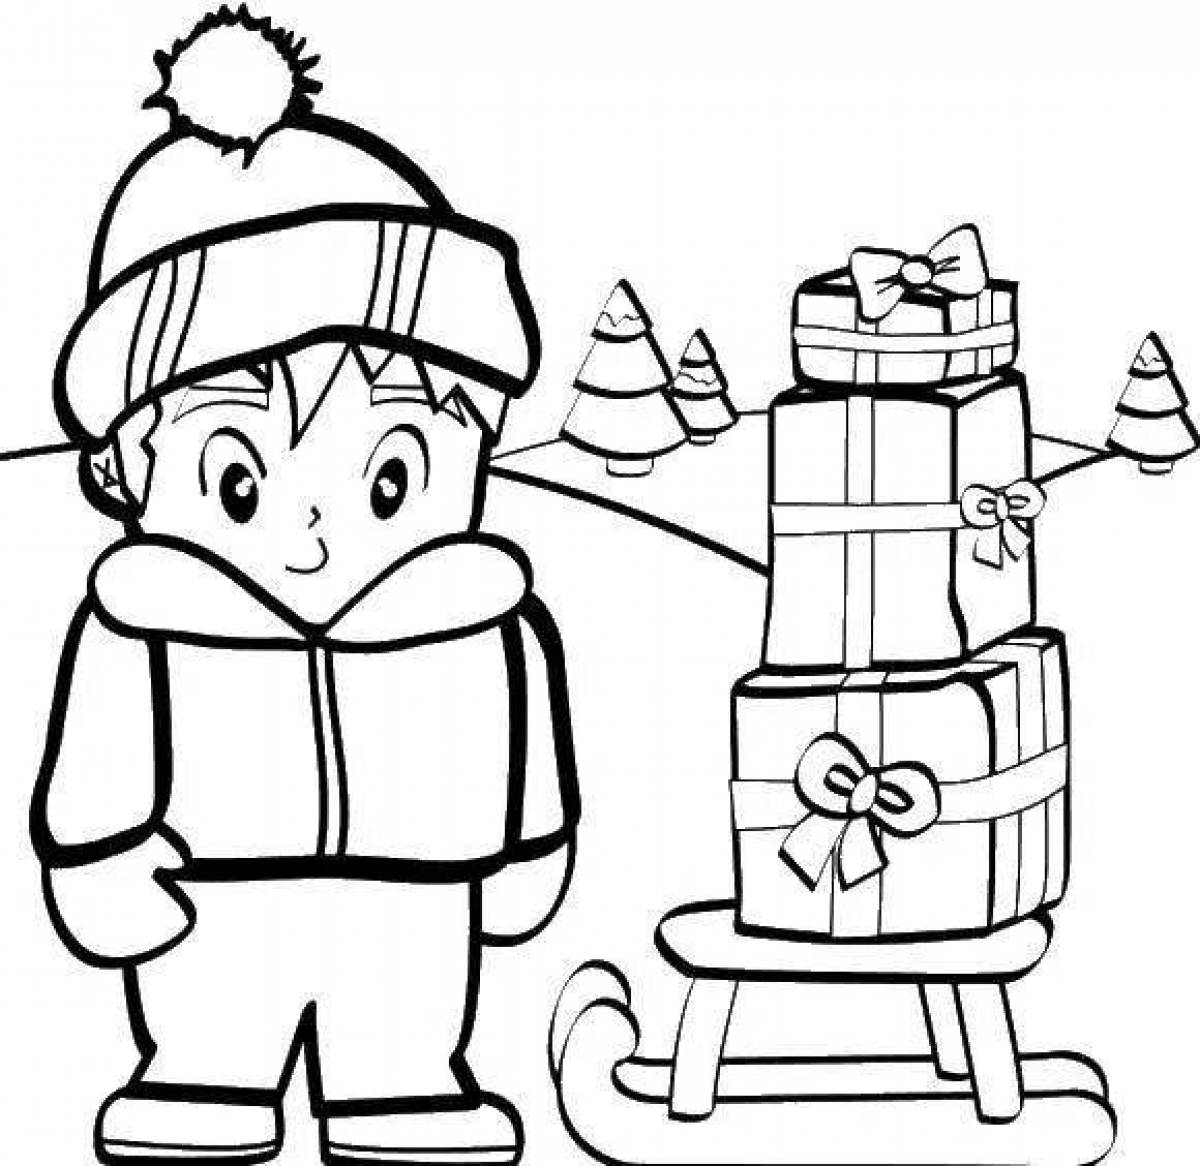 Увлекательная раскраска для детей мальчик в зимней одежде